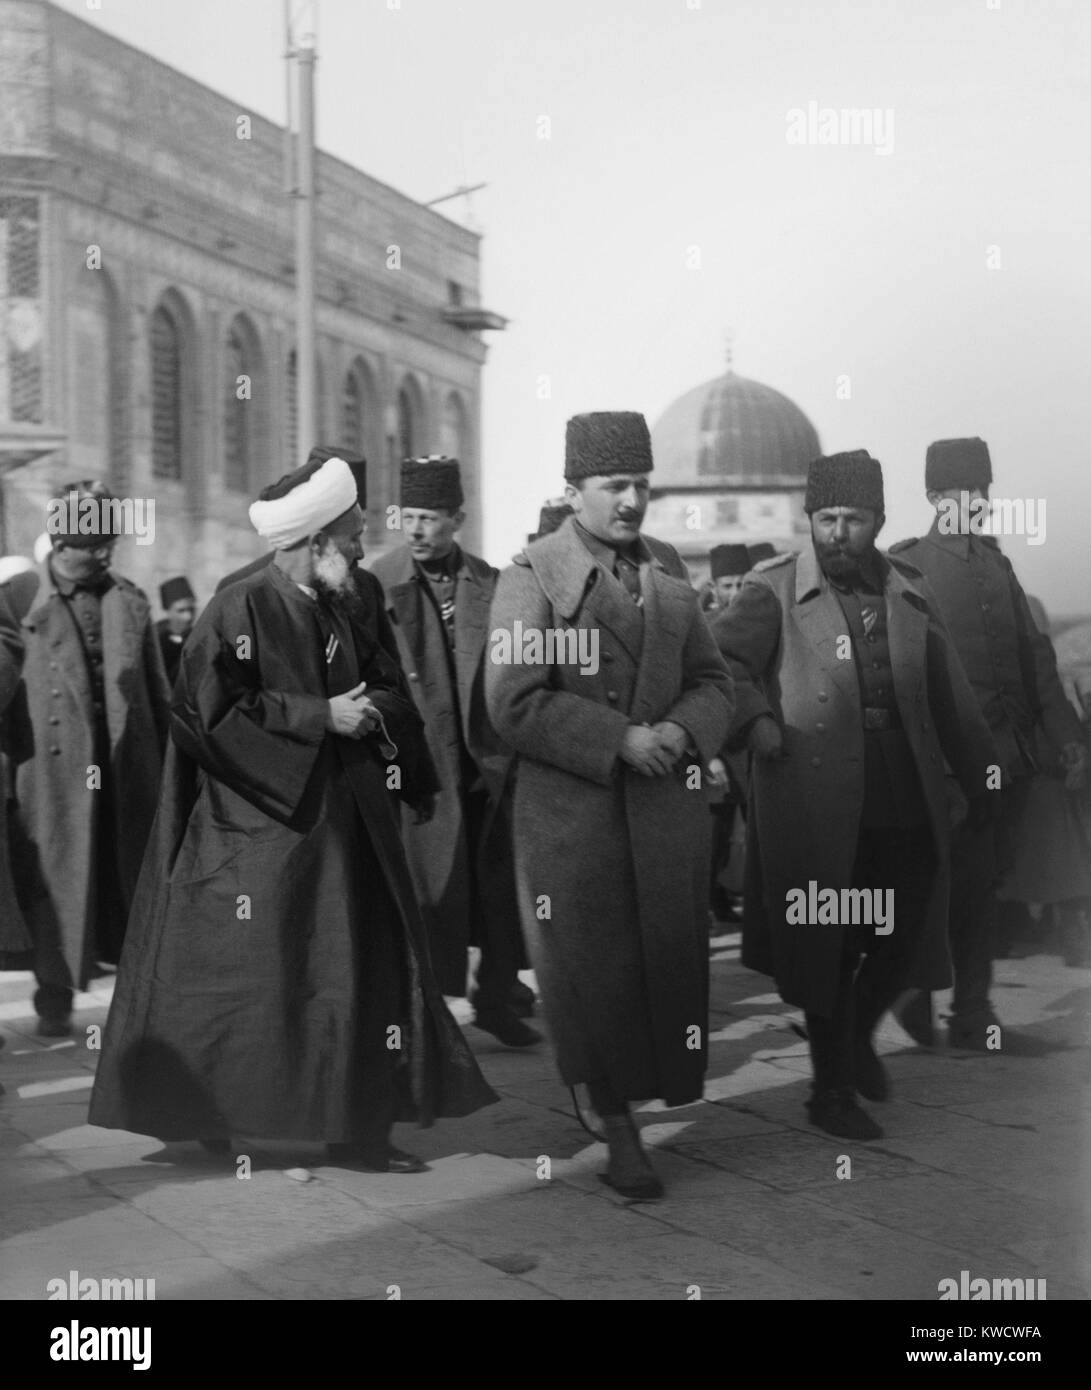 Enver Pascià (centro) e Cemal Pasha (centro destra) a Gerusalemme nel 1916, presso la Cupola della roccia. Enver, come ministro della guerra, è stato il principale leader della Turchia da 1914-1918. Cemal portano l'esercito ottomano contro le forze Britanniche in Egitto in WW1 (BSLOC 2017 1 109) Foto Stock